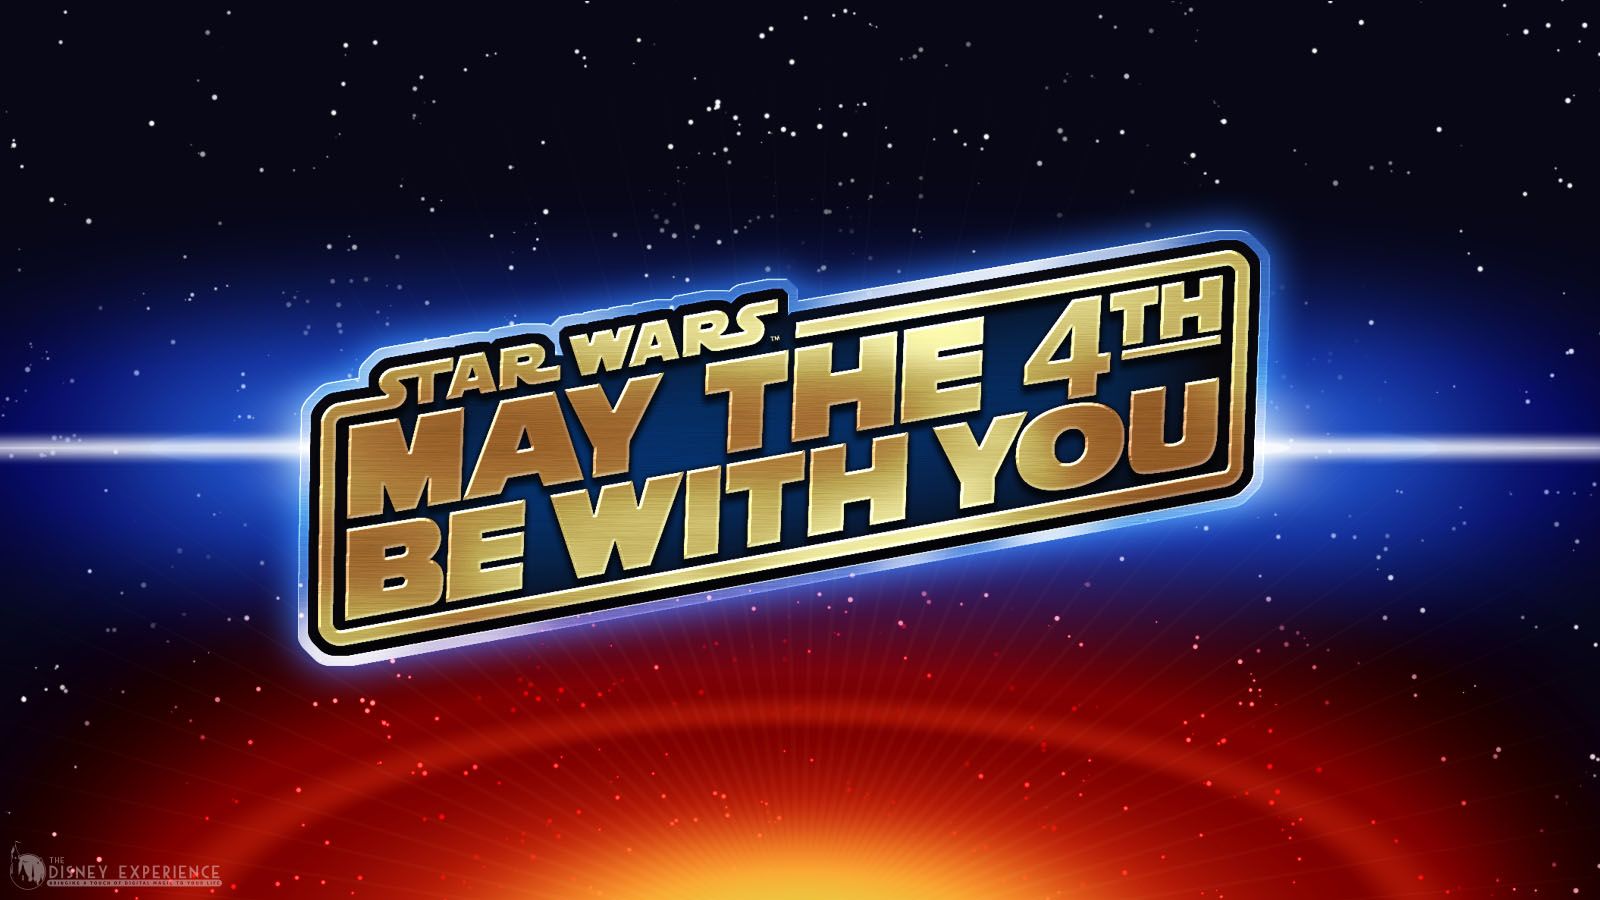 Happy Star Wars Day! eBay Community